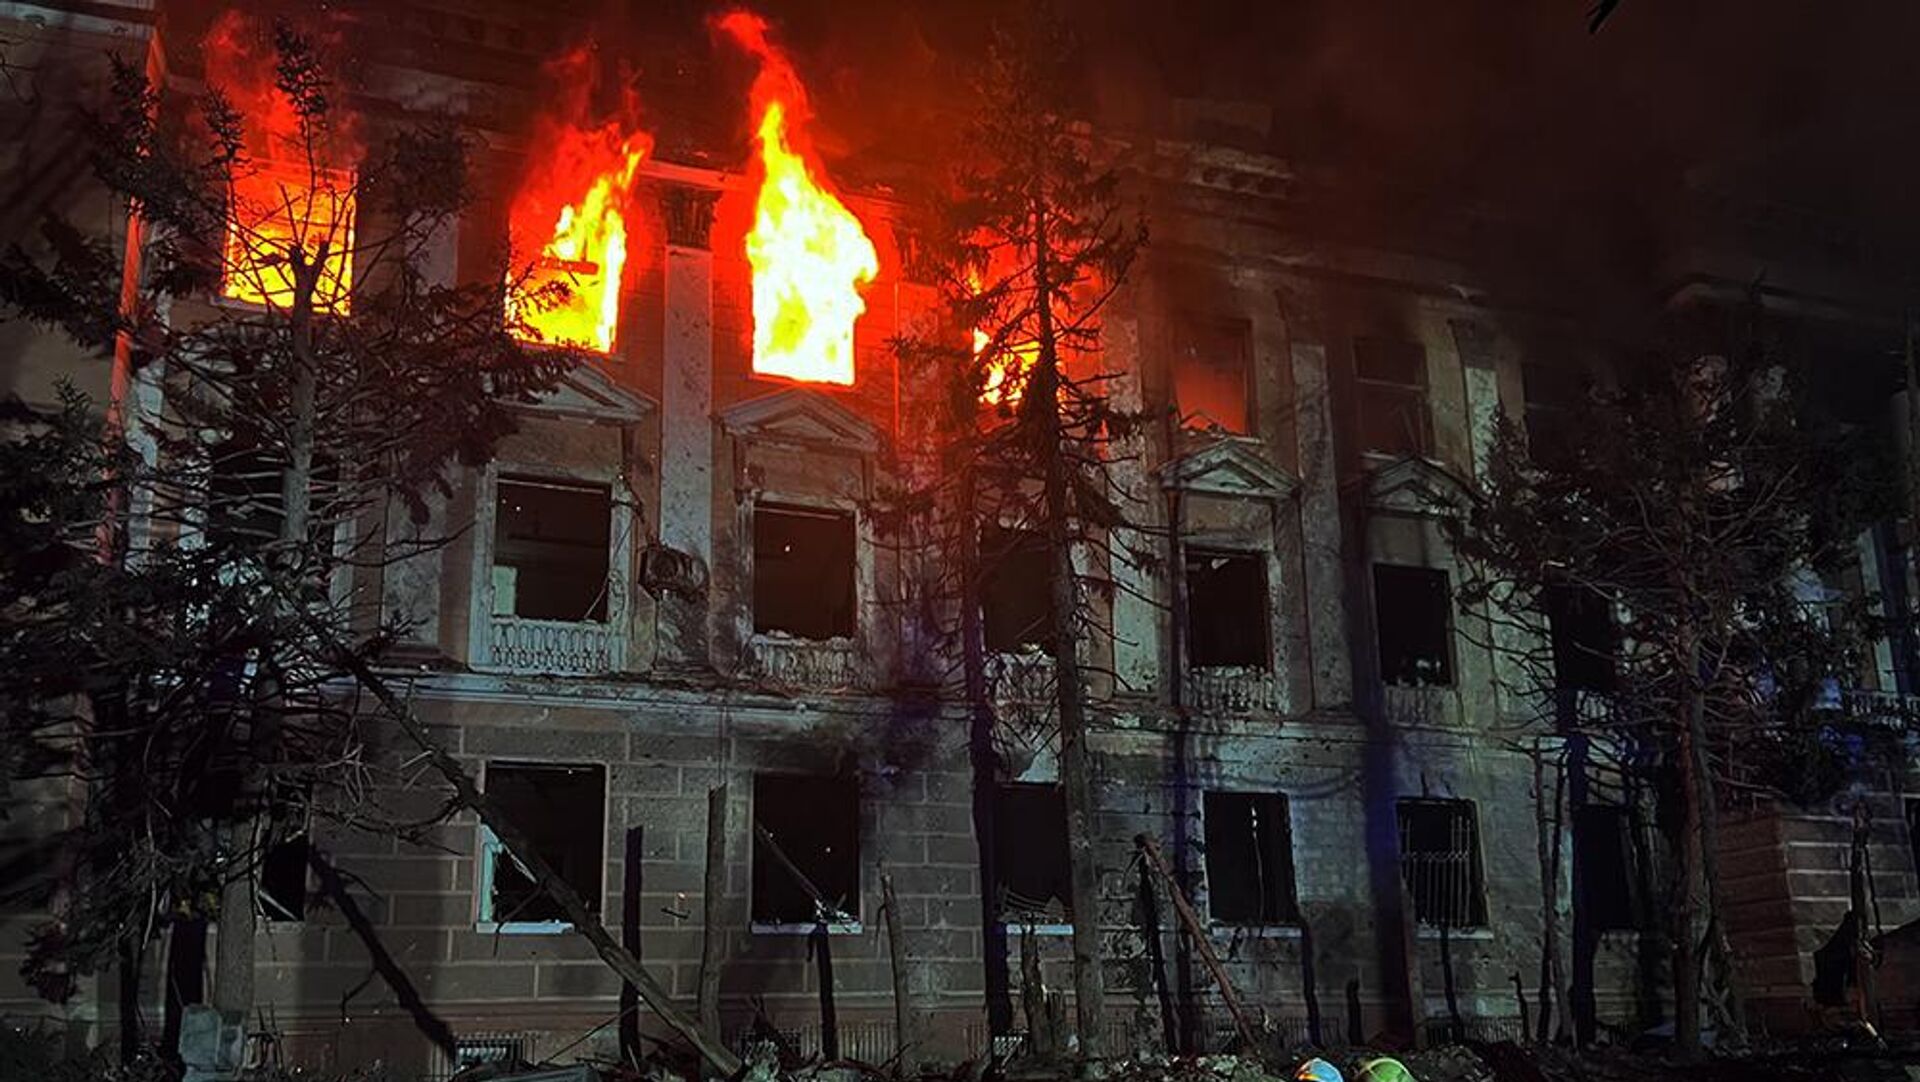 Николаев 30 апреля. Разрушенное здание. Пожар ночью. Дом после пожара. Разрушенный город.